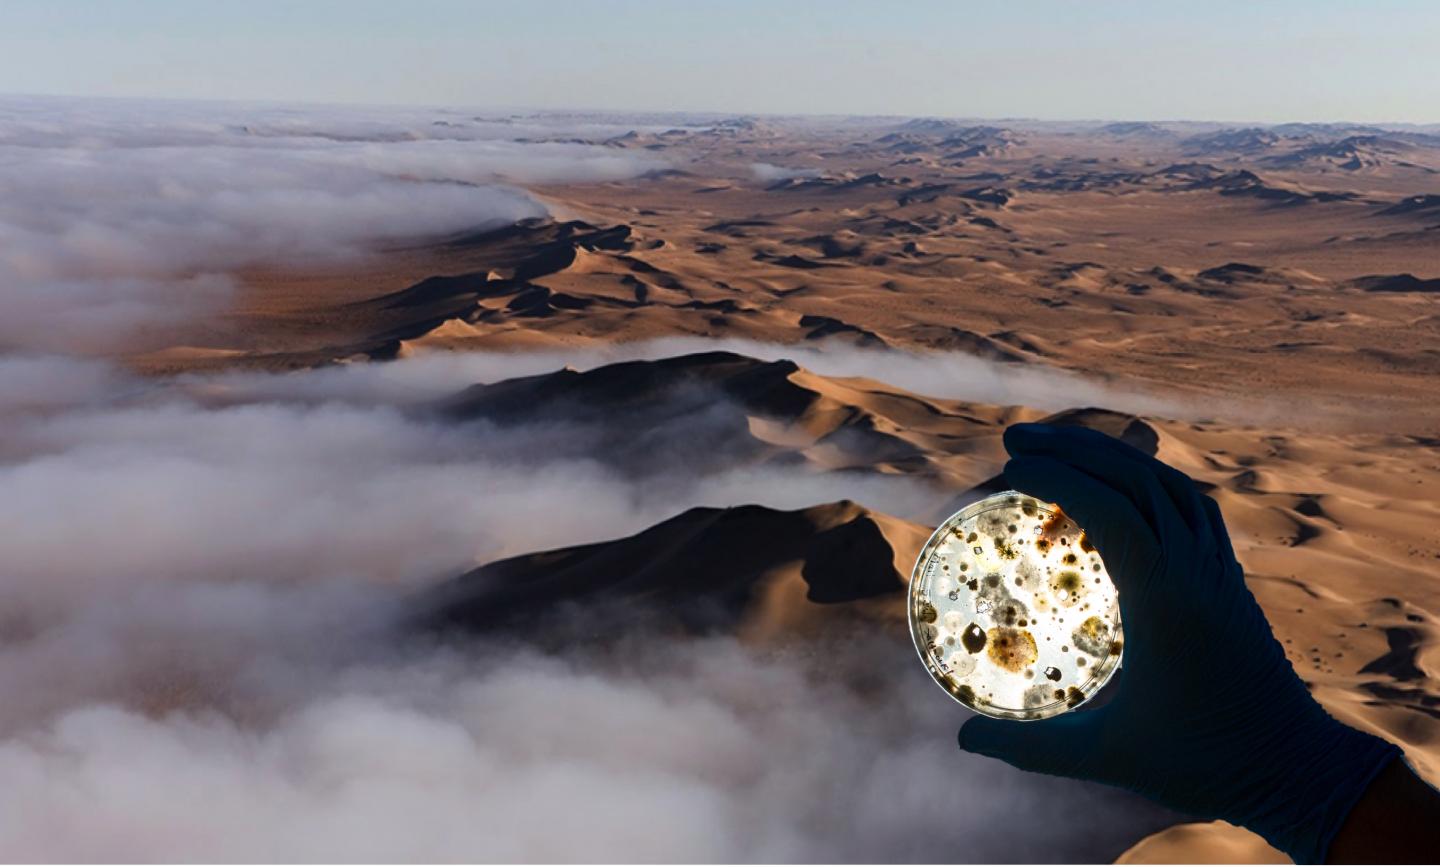 Namib Desert + Microbes